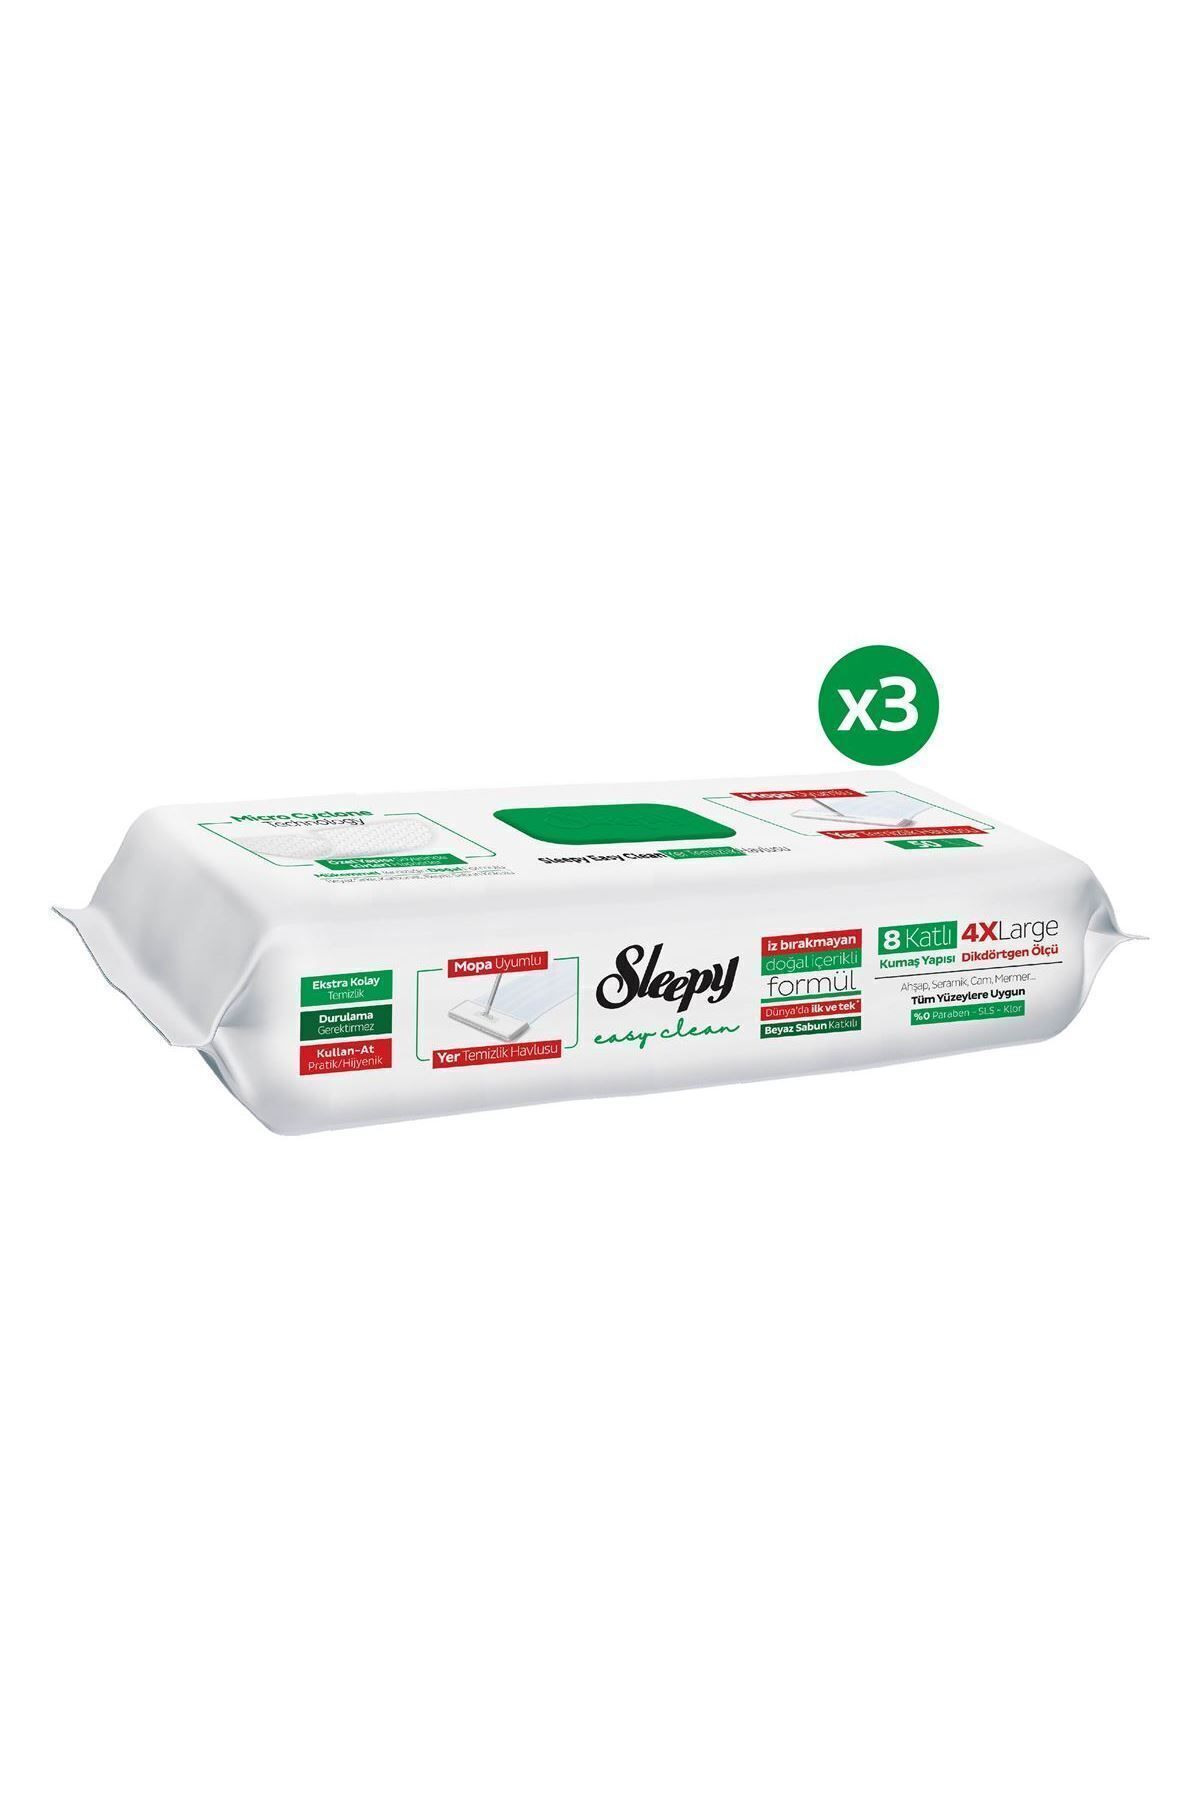 Sleepy Easy Clean Beyaz Sabun Katkılı Mopa Uyumlu Yer Temizlik Havlusu 3X50 (150 Yaprak)